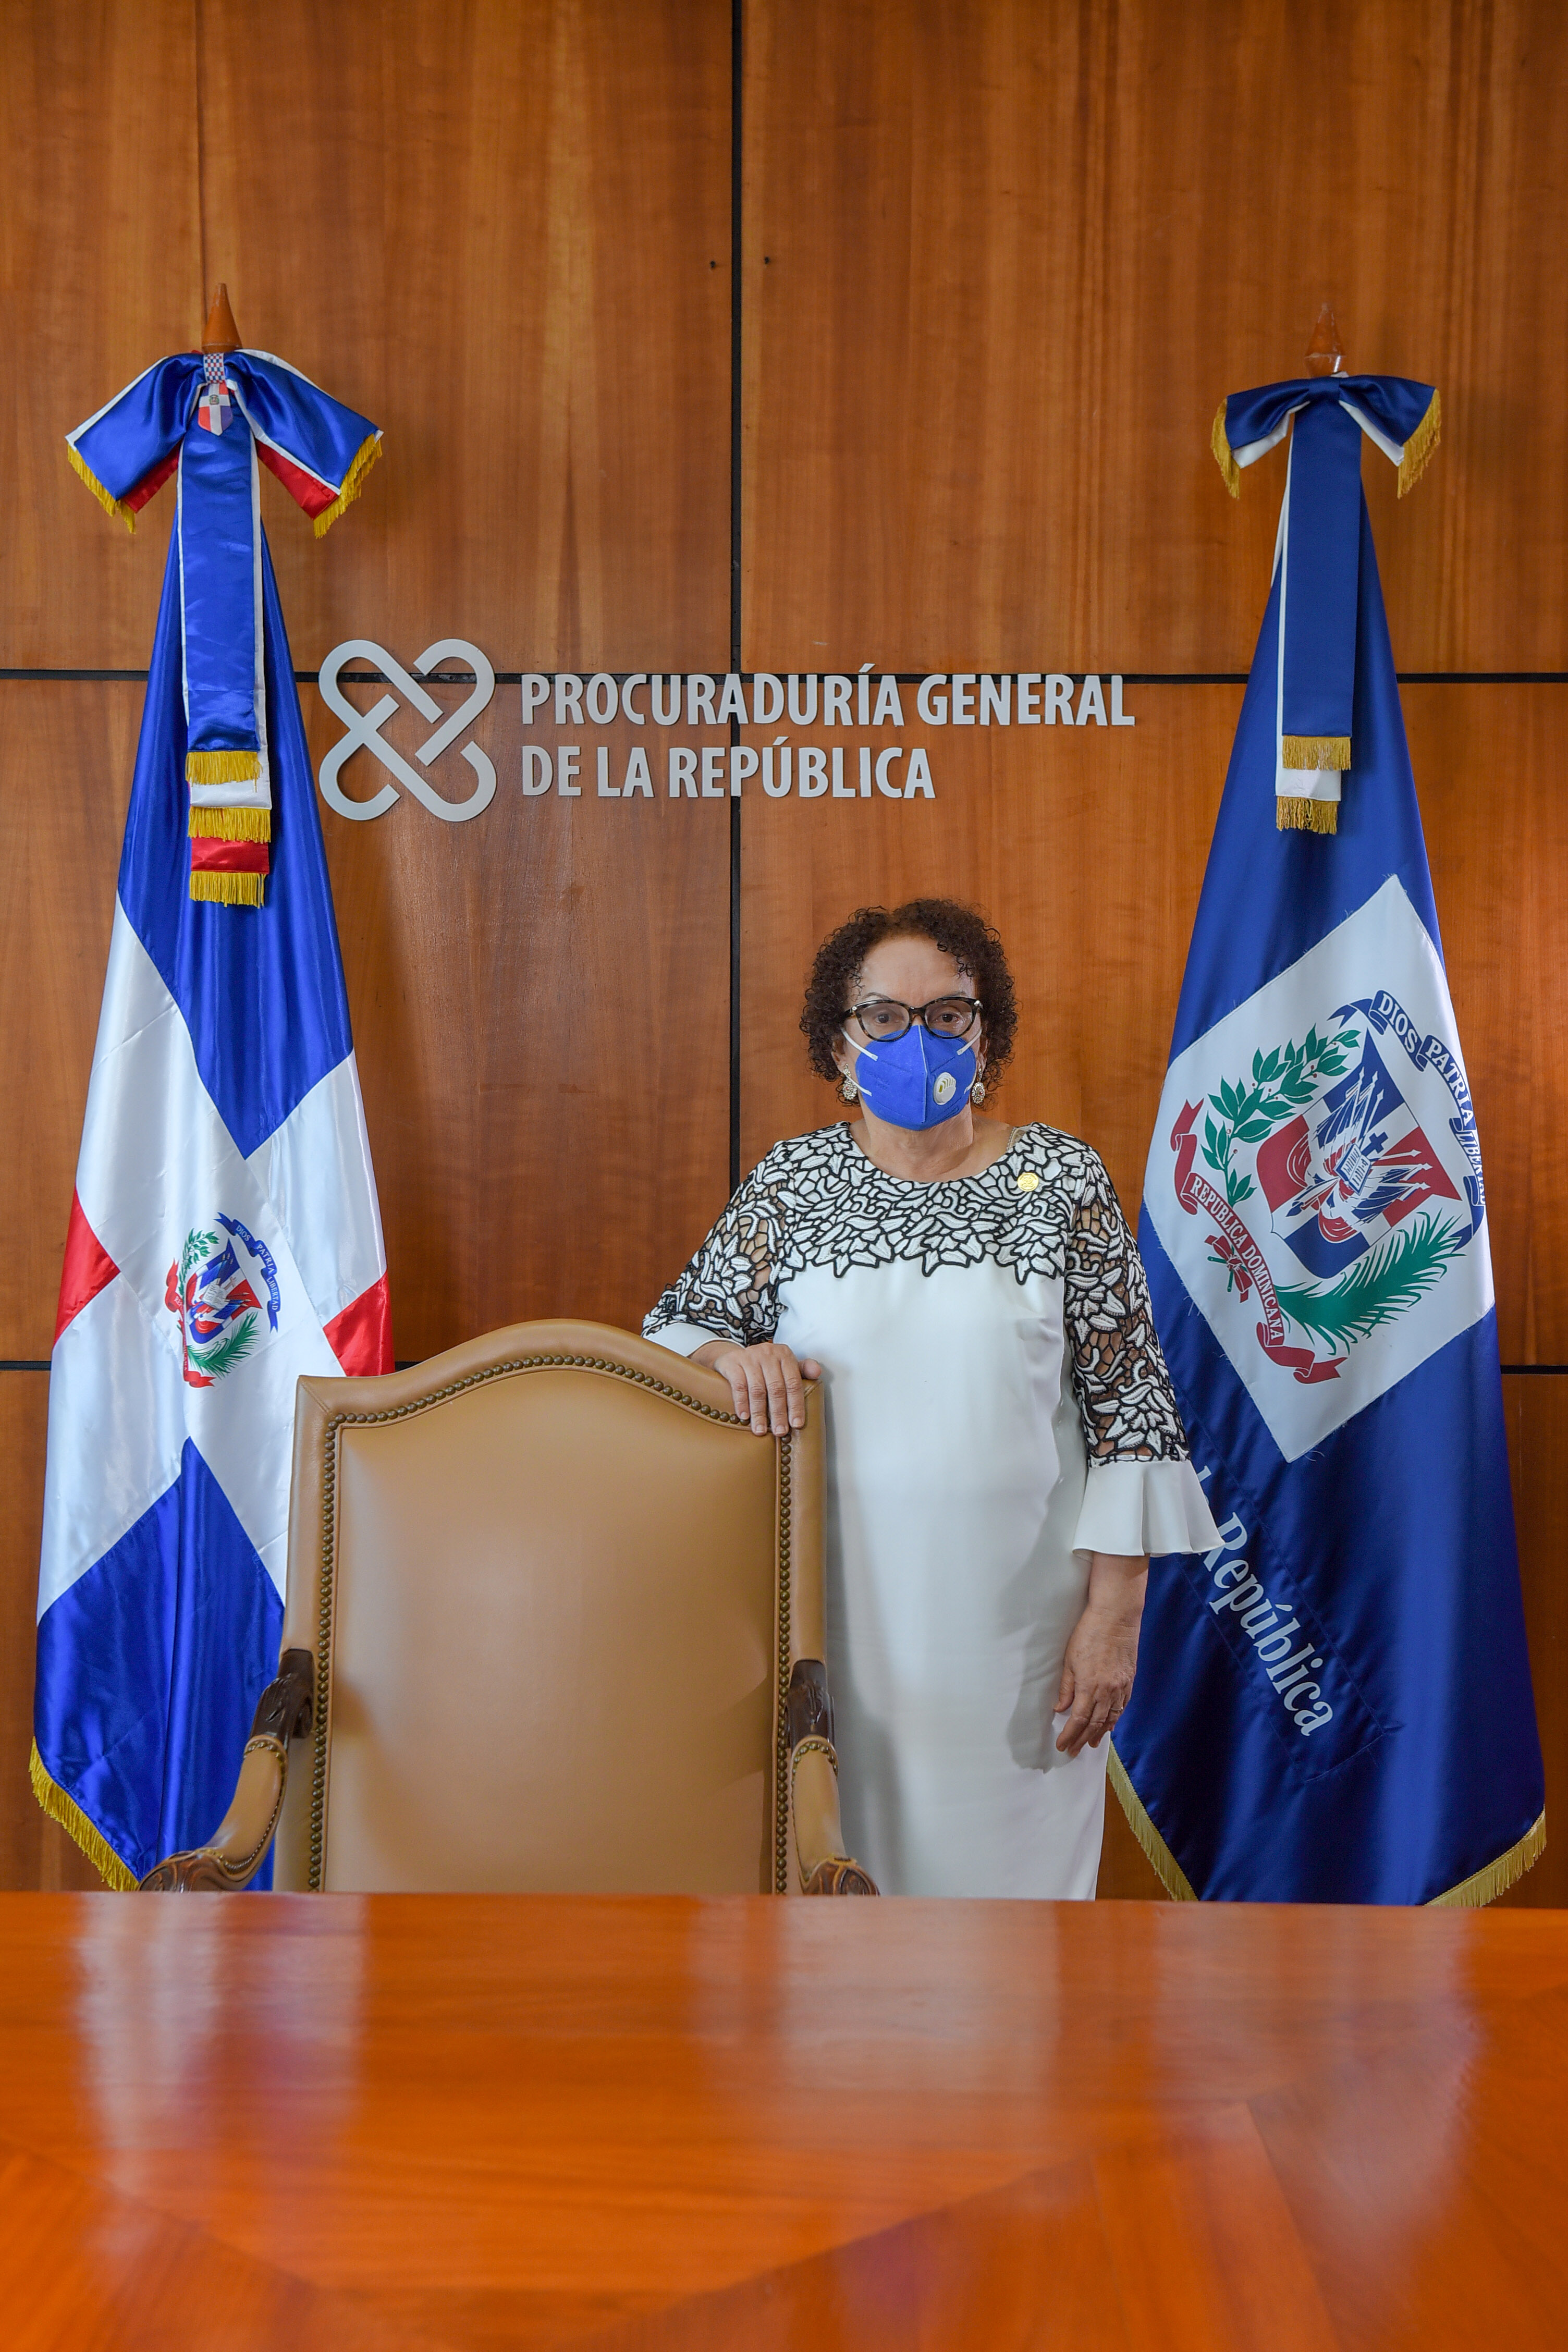 Miriam Germán Birto Procuradora General de la República.